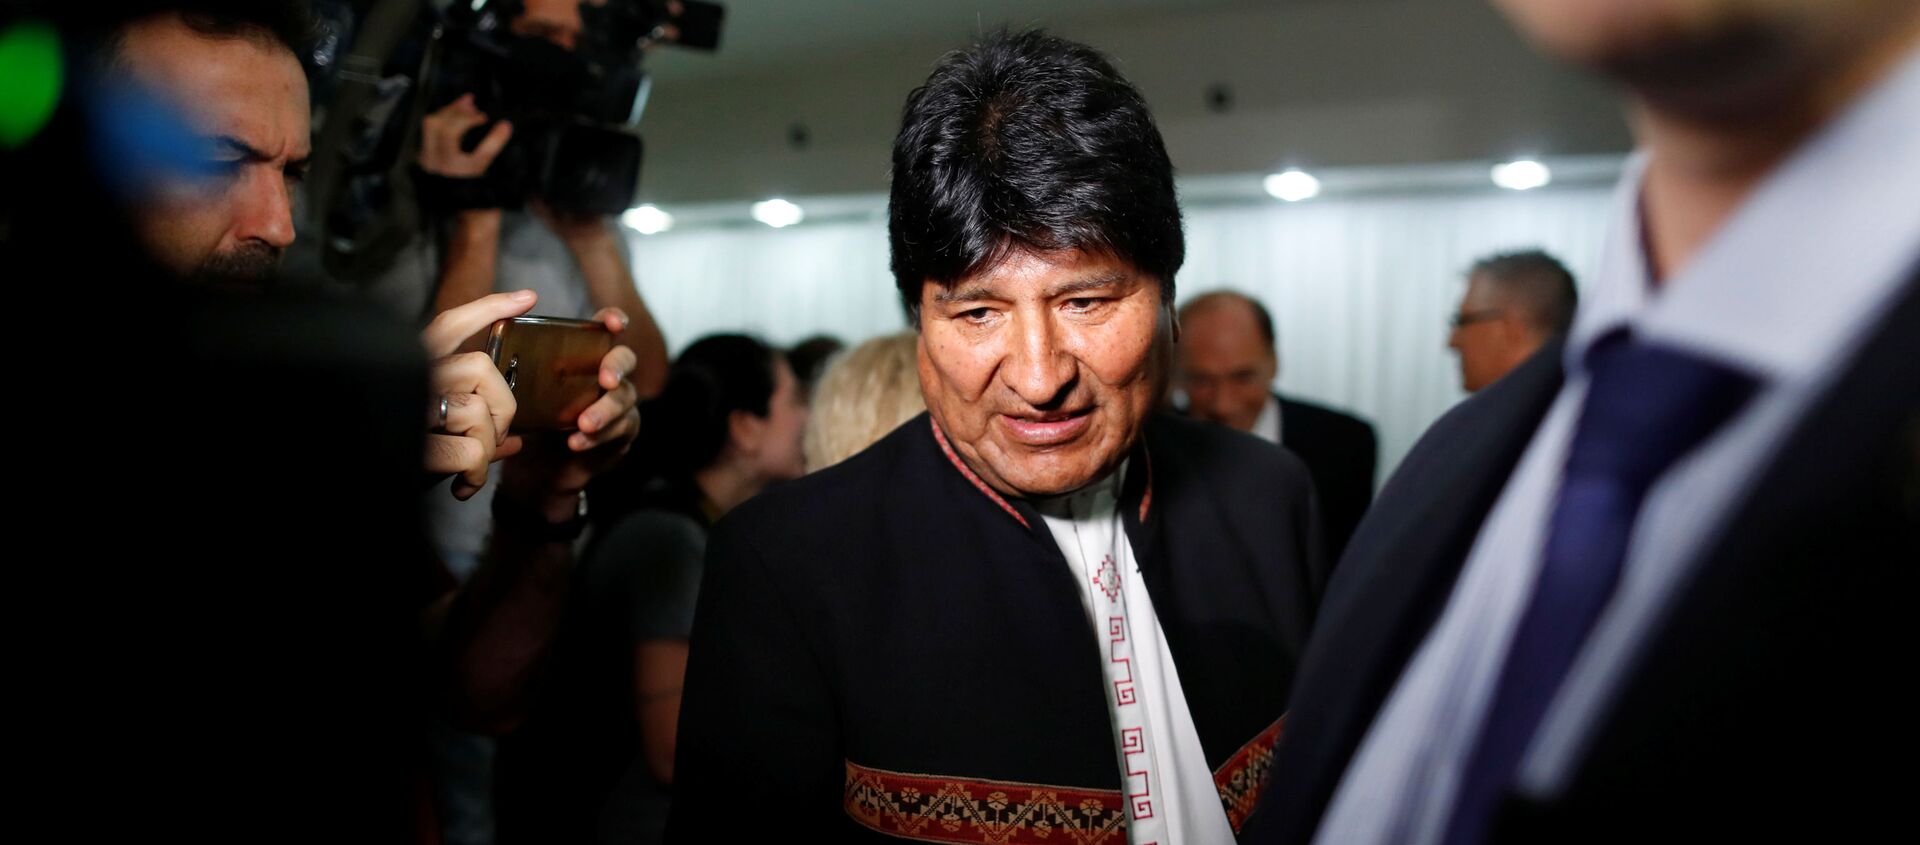 Evo Morales, el expresidente de Bolivia - Sputnik Mundo, 1920, 22.01.2020